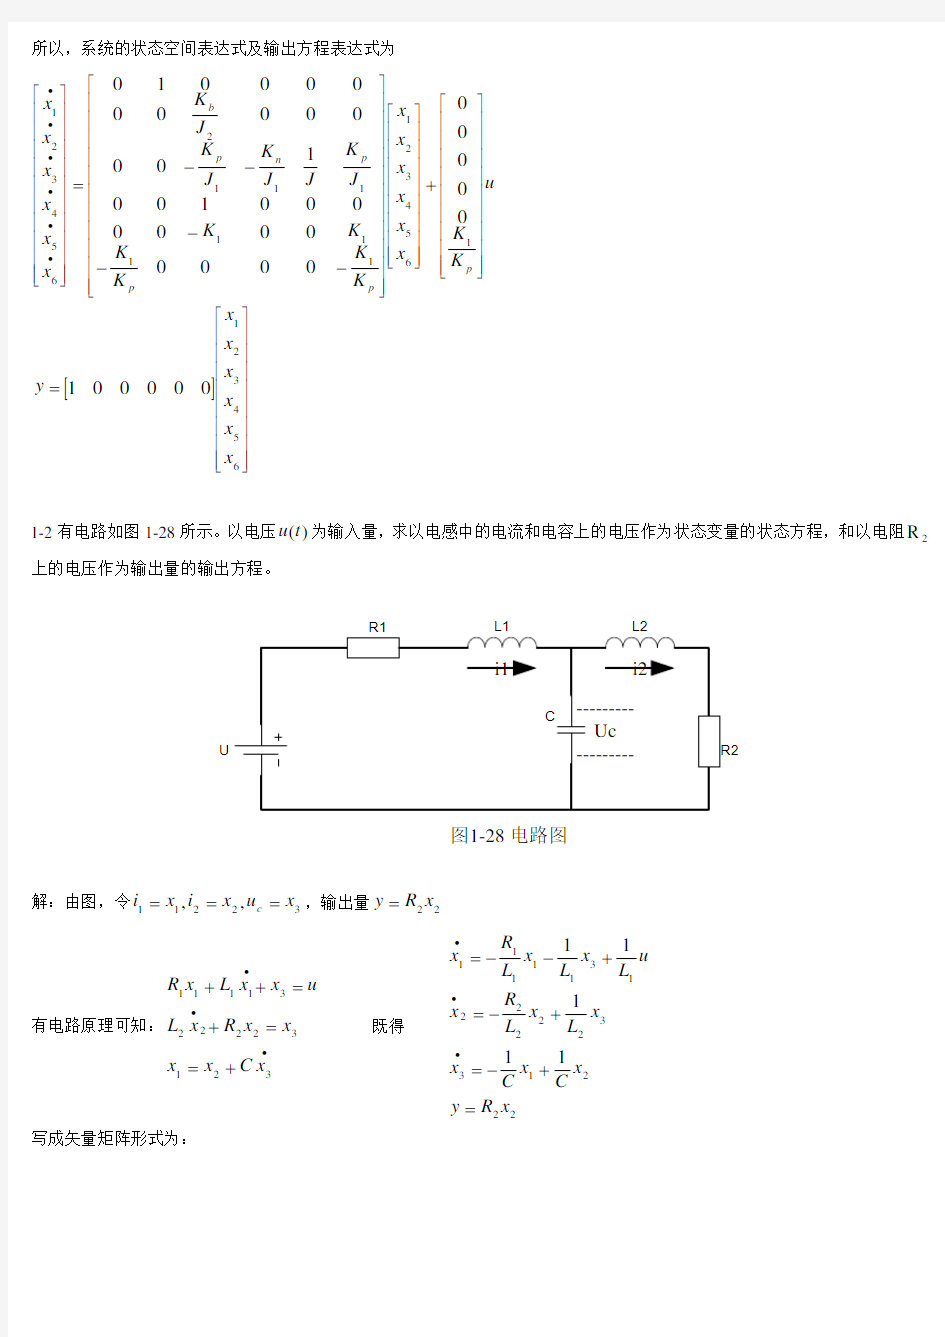 《现代控制理论》第3版(刘豹_唐万生)课后习题答案